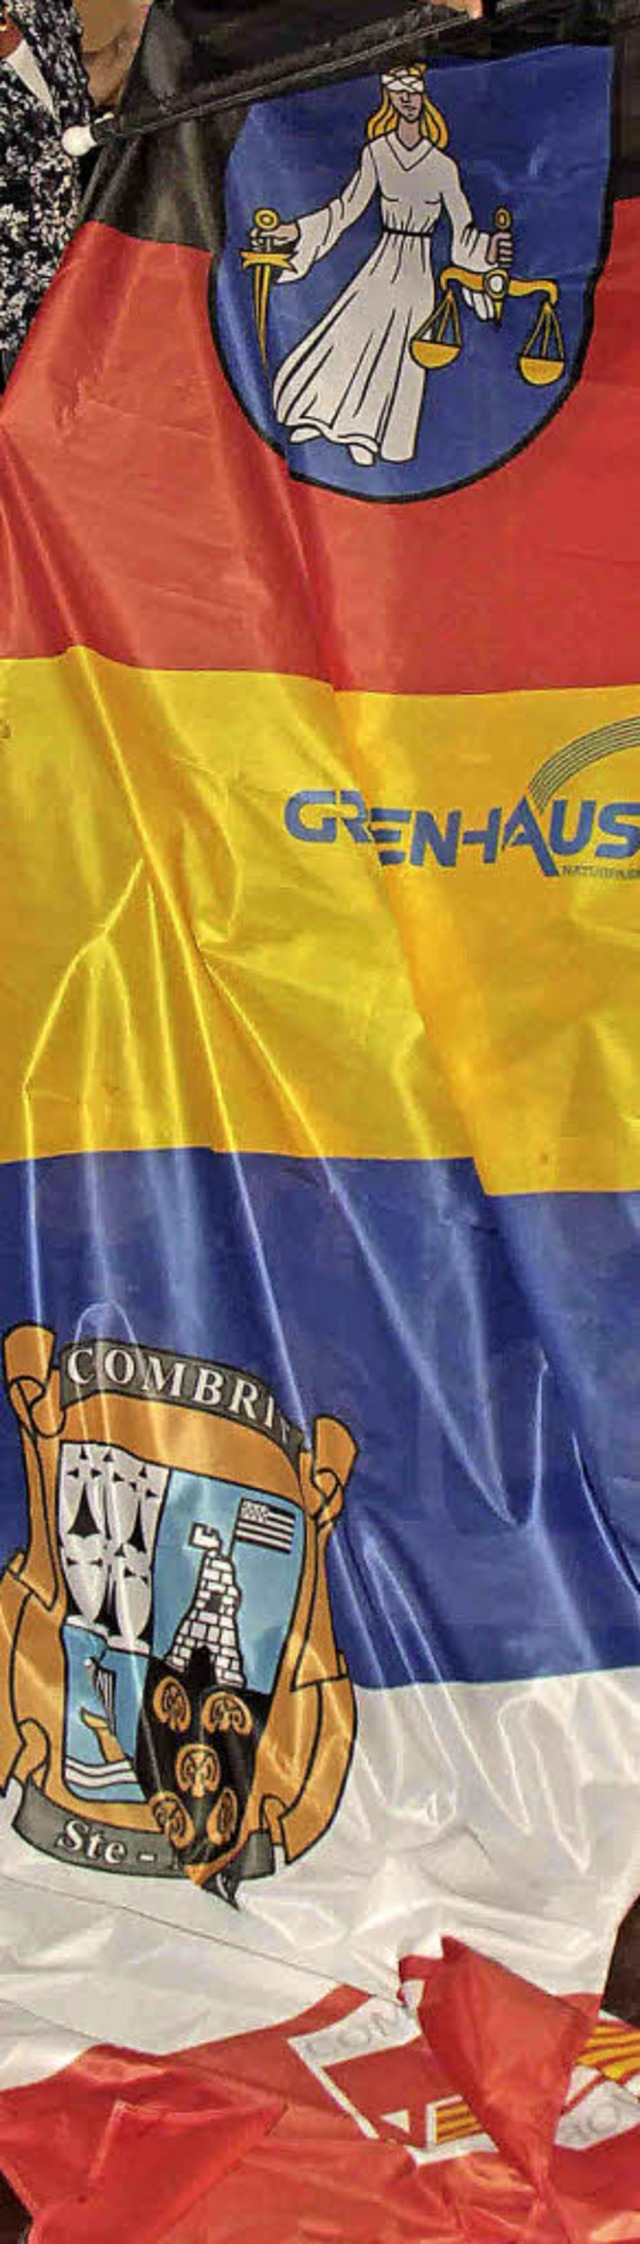 Beim offiziellen Festakt in Grafenhaus... Jumelage eine Fahne der Freundschaft.  | Foto: Archiv